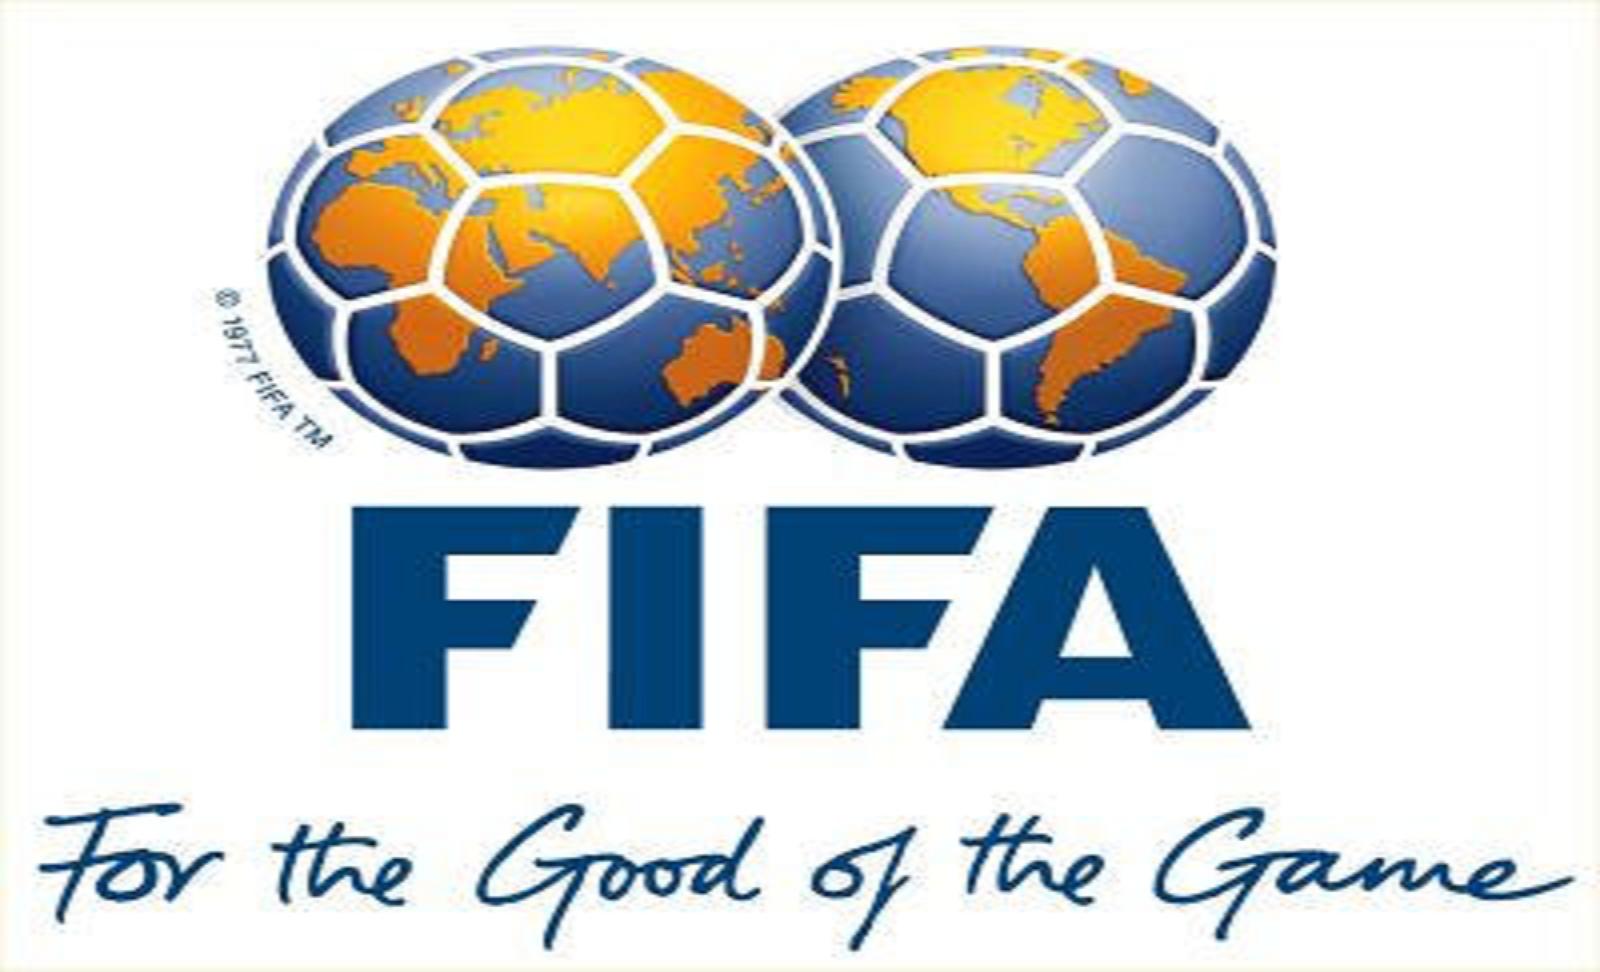 تصنيف الاتحاد الدولي لكرة القدم فيفا شهر يوليو 2014 بعد انتهاء كأس العالم